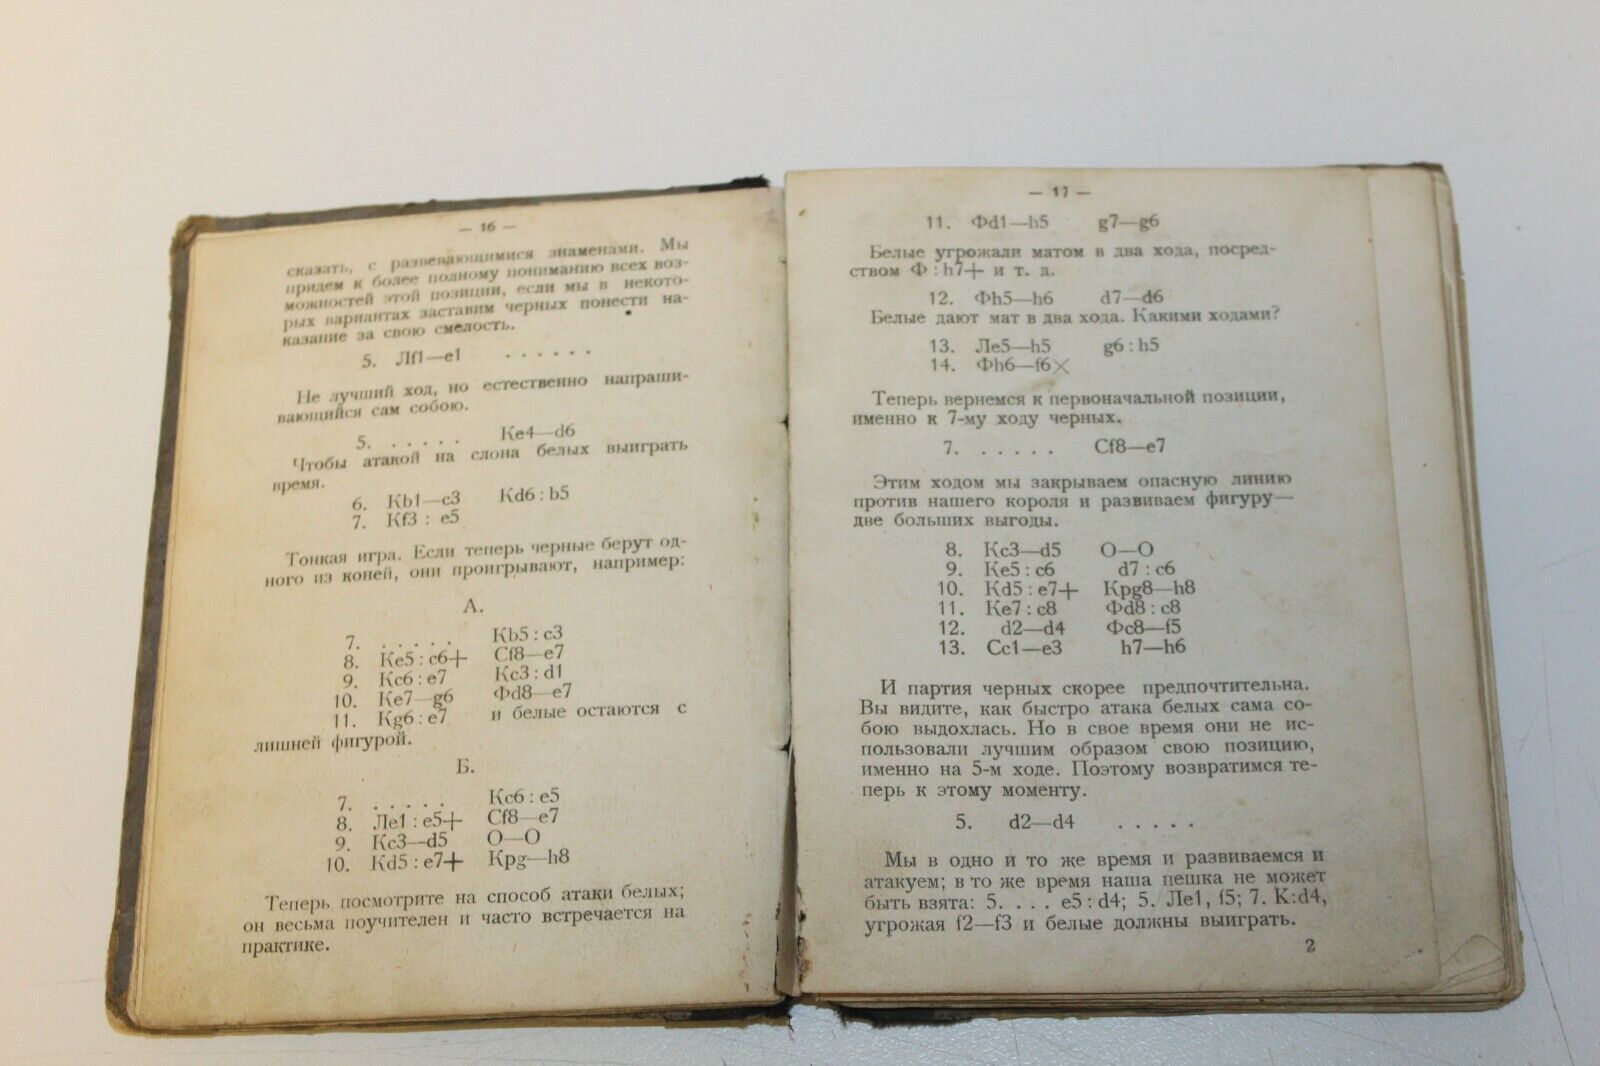 10865.Antique Russian Chess Book: E.Lasker. Common sense in chess game. 1924